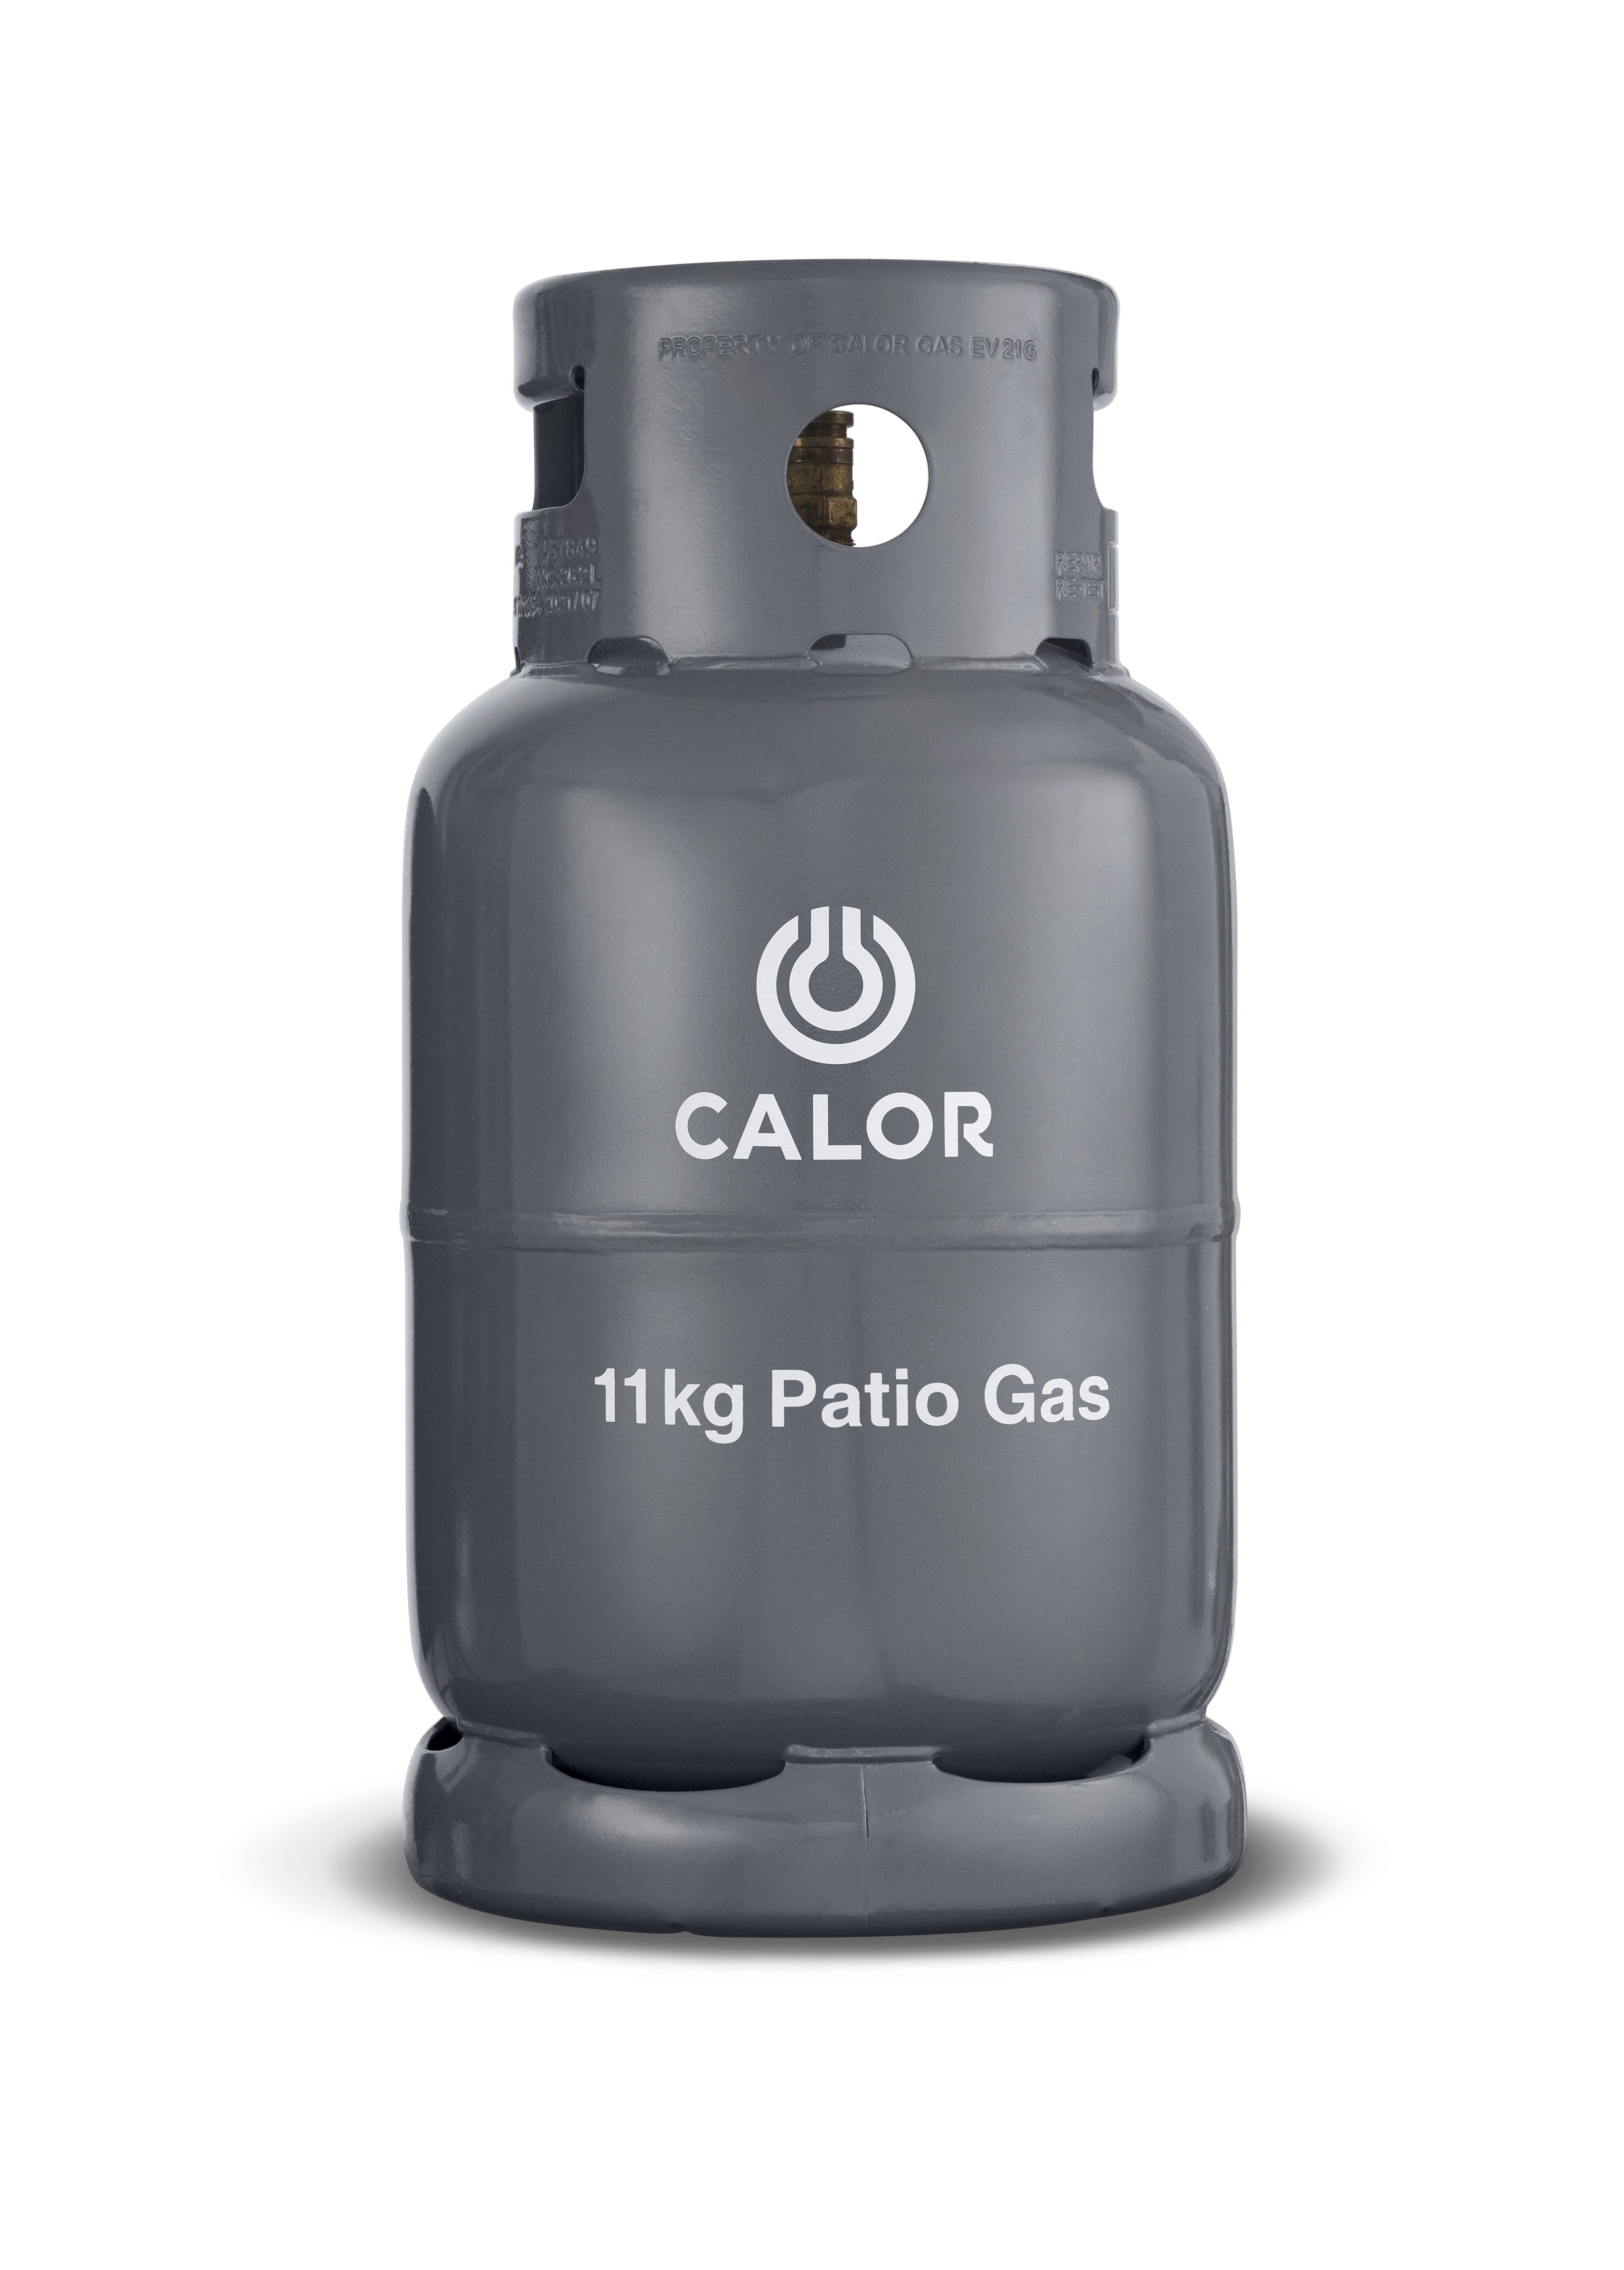 Calor 34kg Gas Cylinder, Buy Online Today